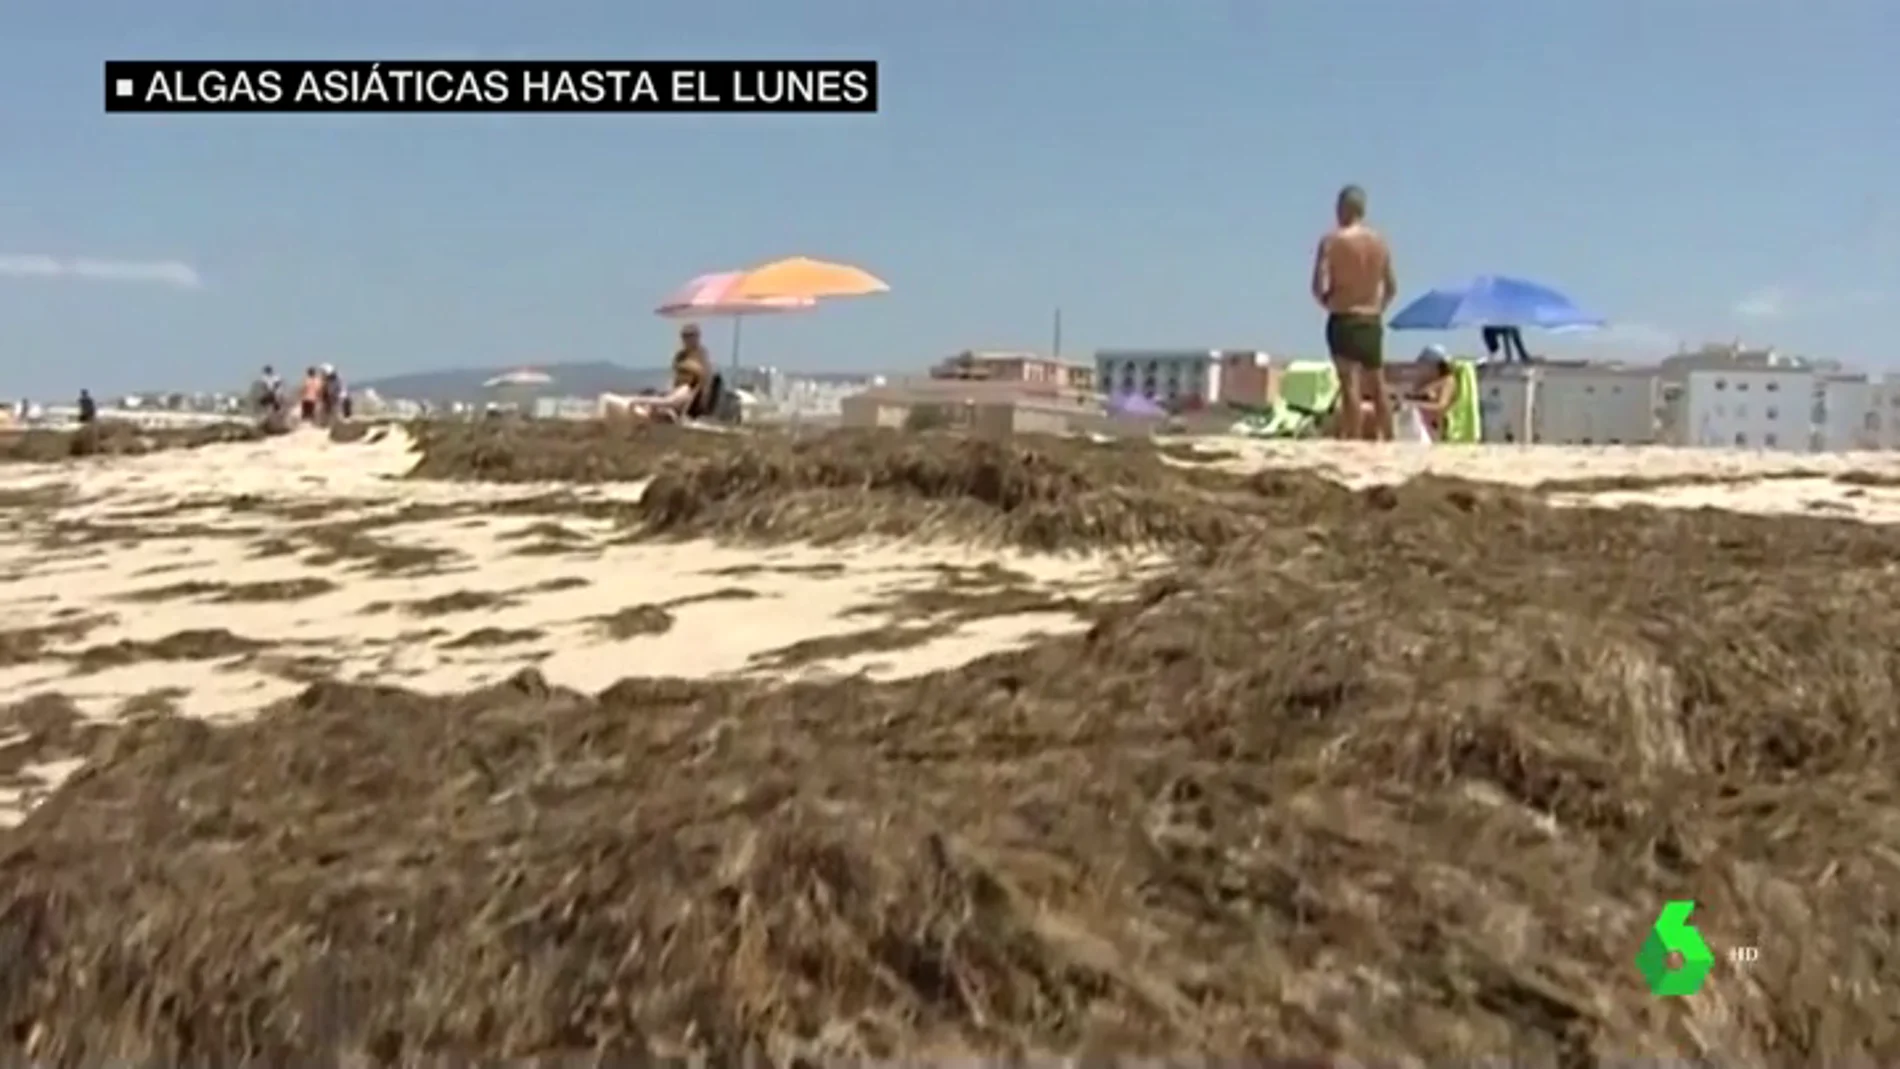 El alga asiática seguirá en las playas de Cádiz al menos hasta el lunes